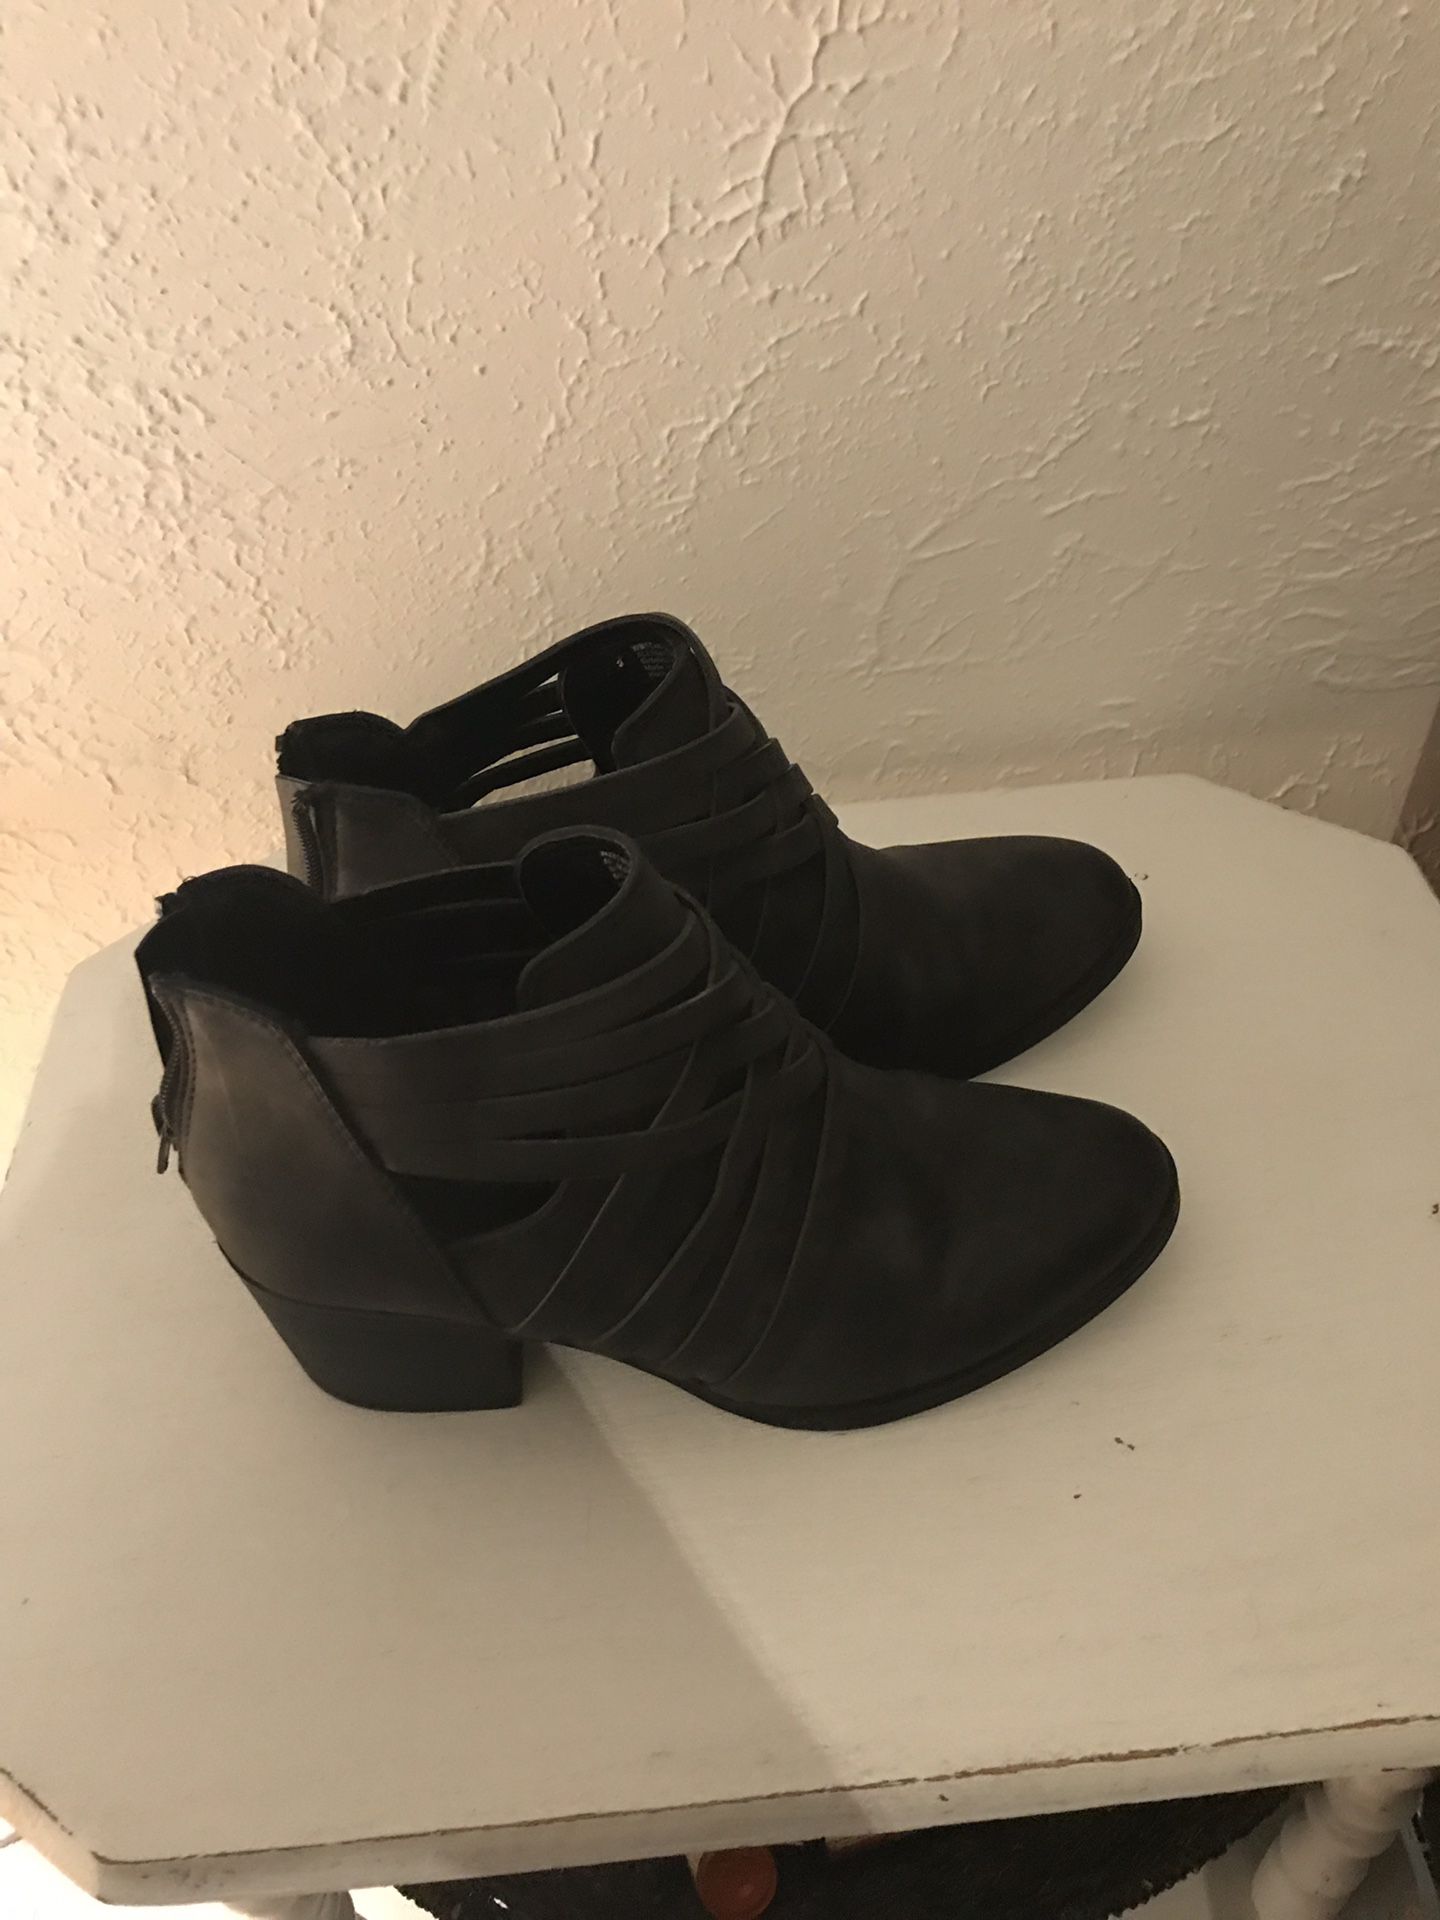 Women’s boots